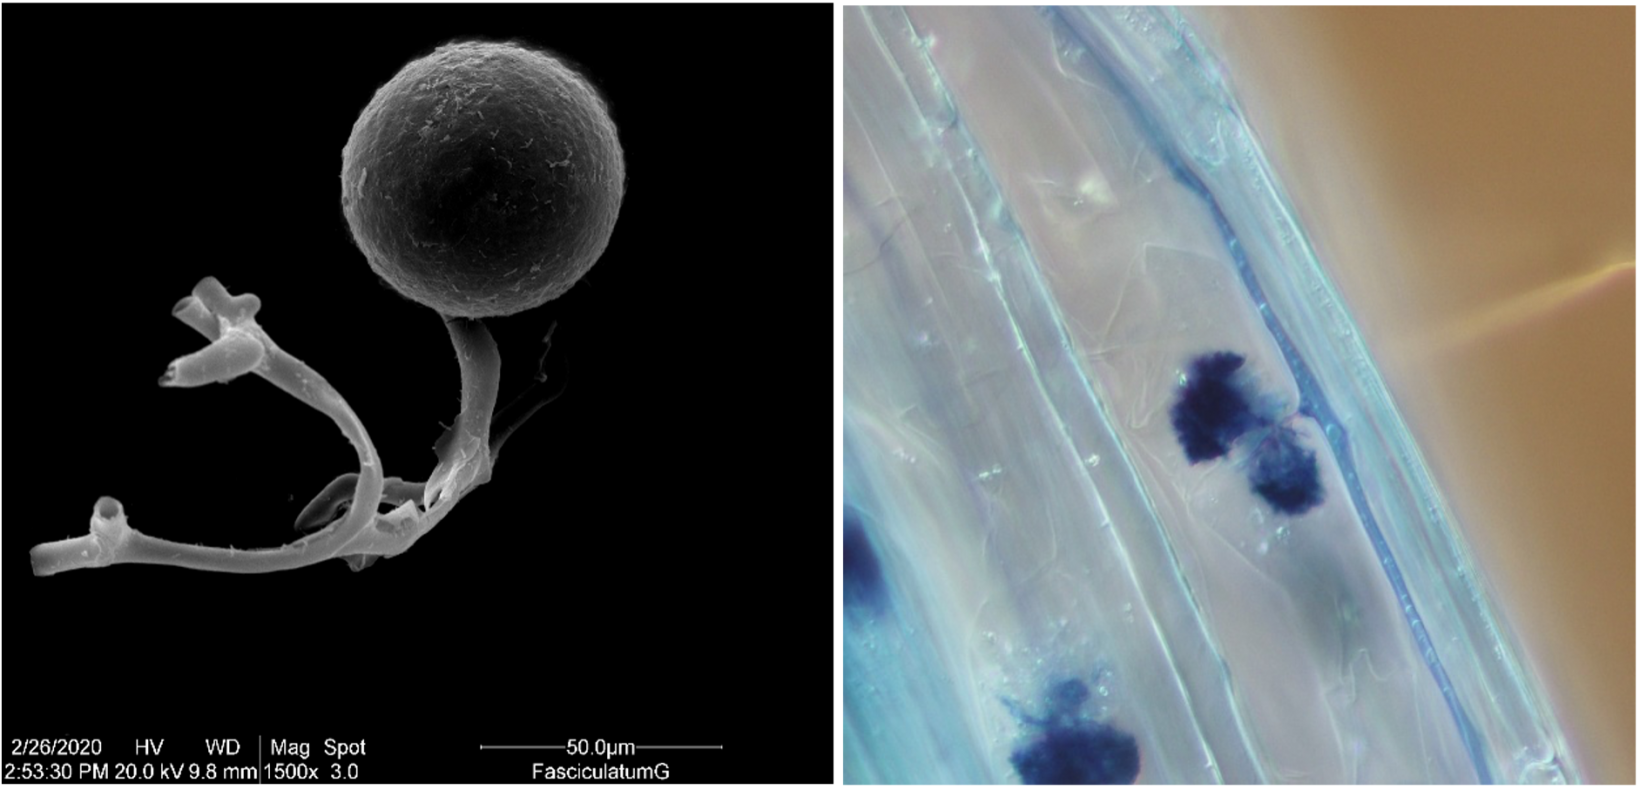 Structures microscopiques de spores mycorhiziennes et de champignons mycorhiziens connus sous le nom d’arbuscules